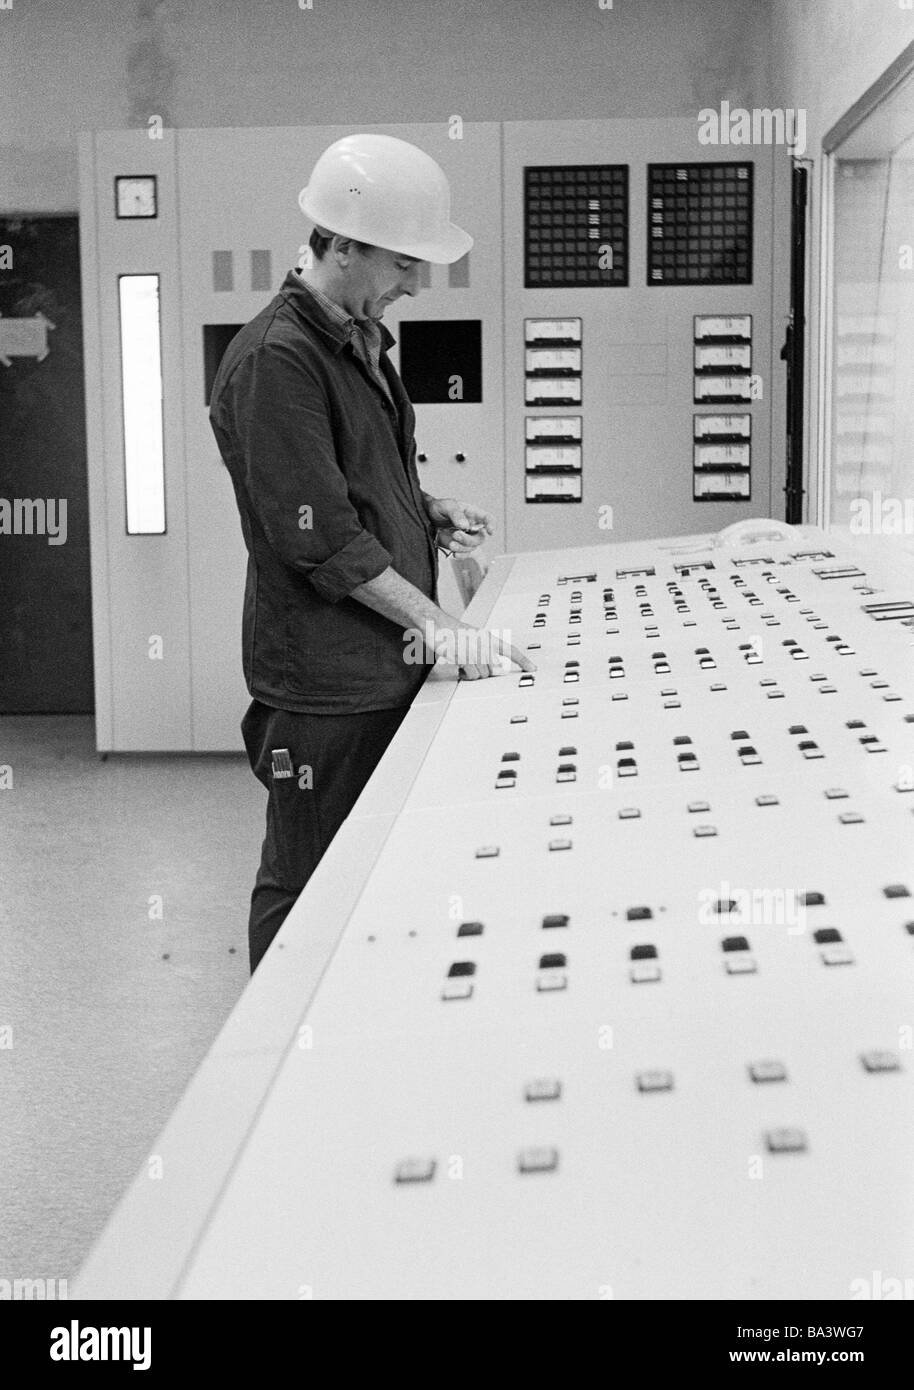 Negli anni settanta, foto in bianco e nero, business, uomo con elmetto sorge in corrispondenza di una postazione di controllo, di età compresa tra i 30 e i 40 anni, la zona della Ruhr, Renania settentrionale-Vestfalia Foto Stock